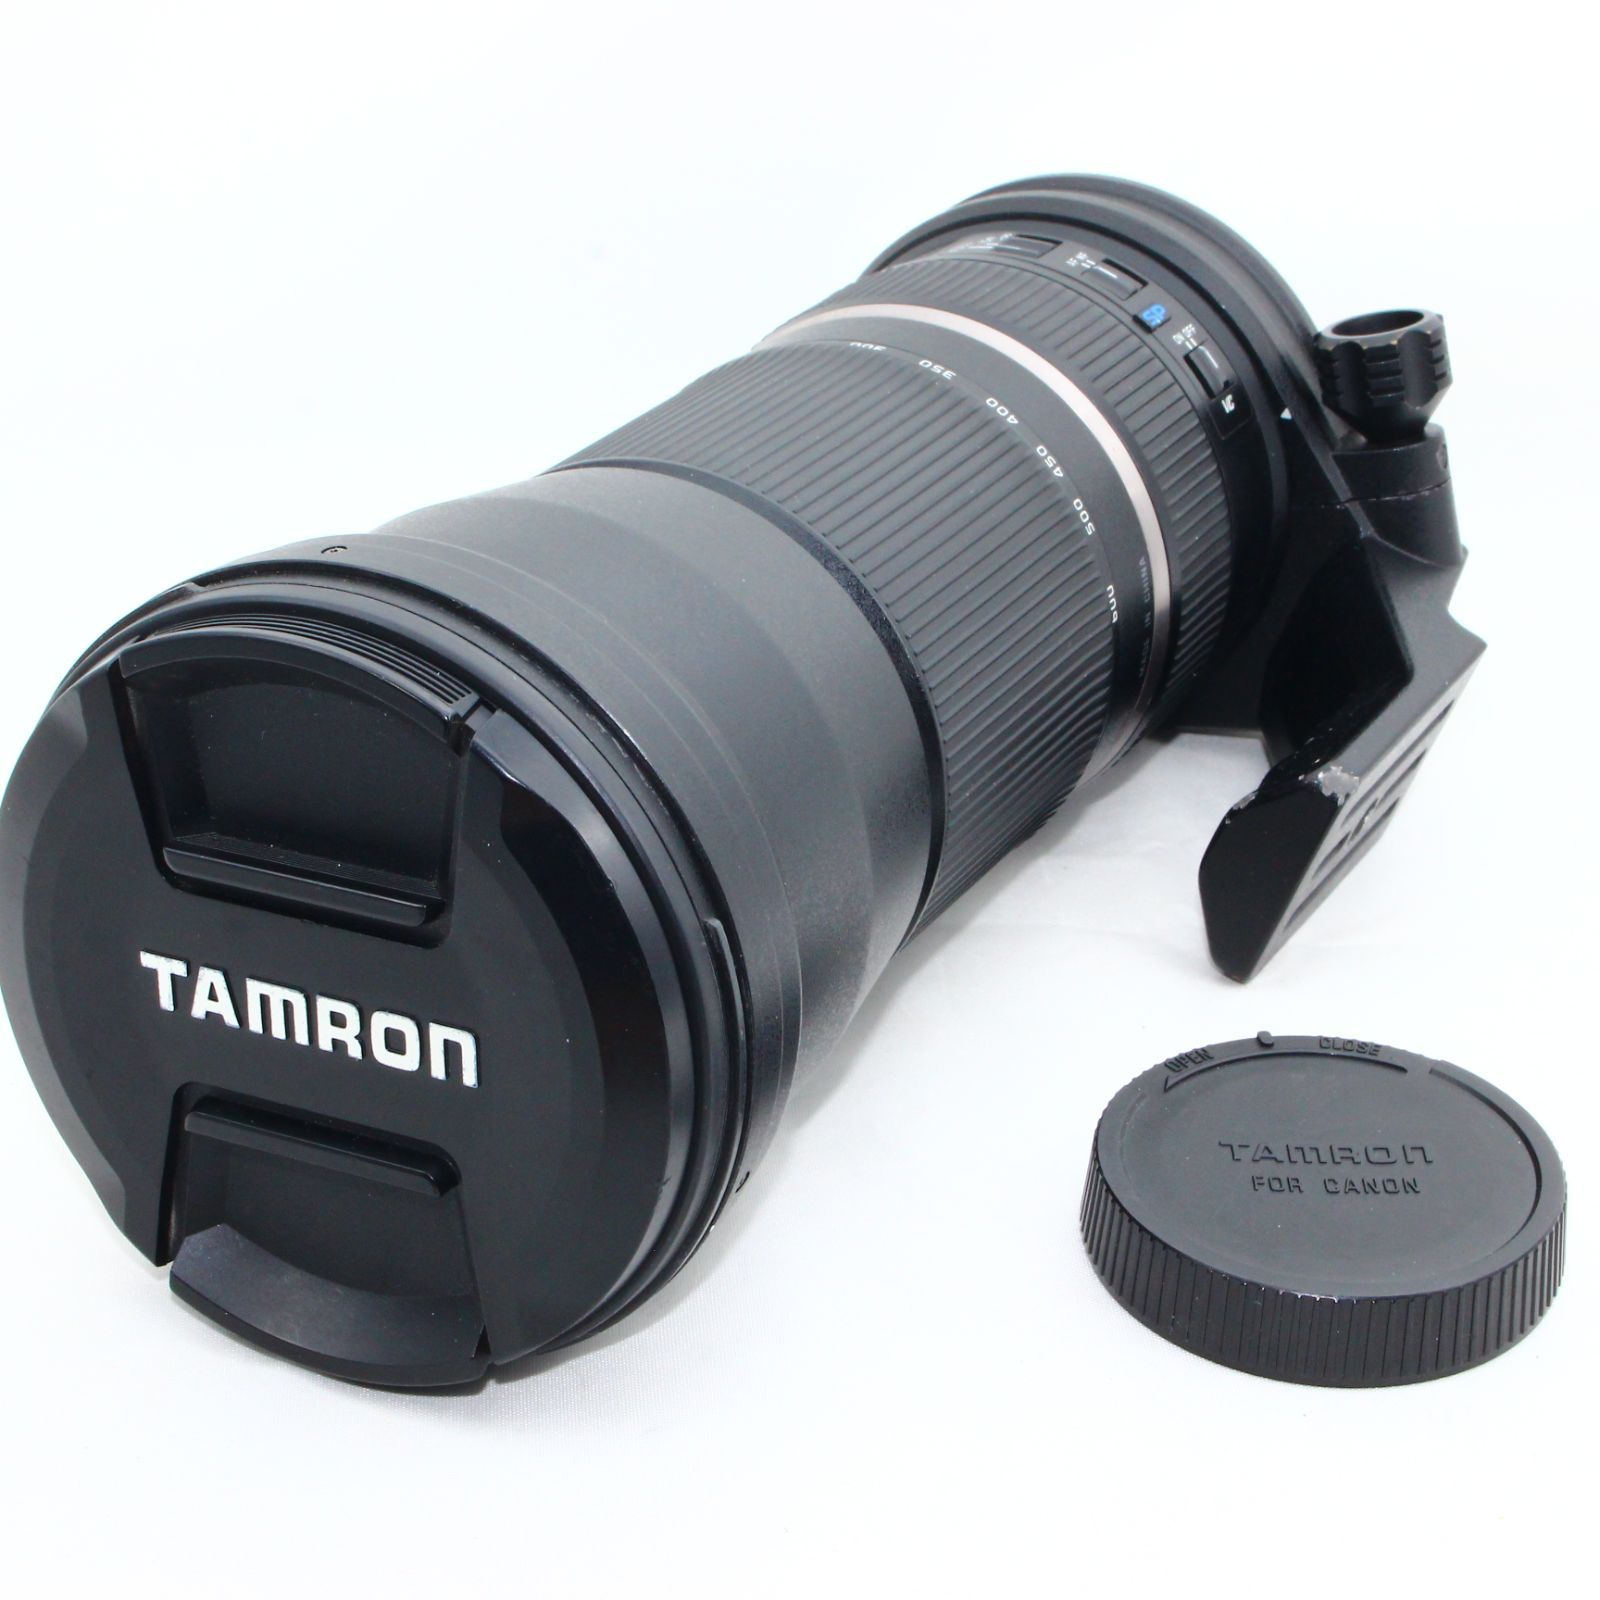 TAMRON 超望遠ズームレンズ SP 150-600mm F5-6.3 Di VC USD